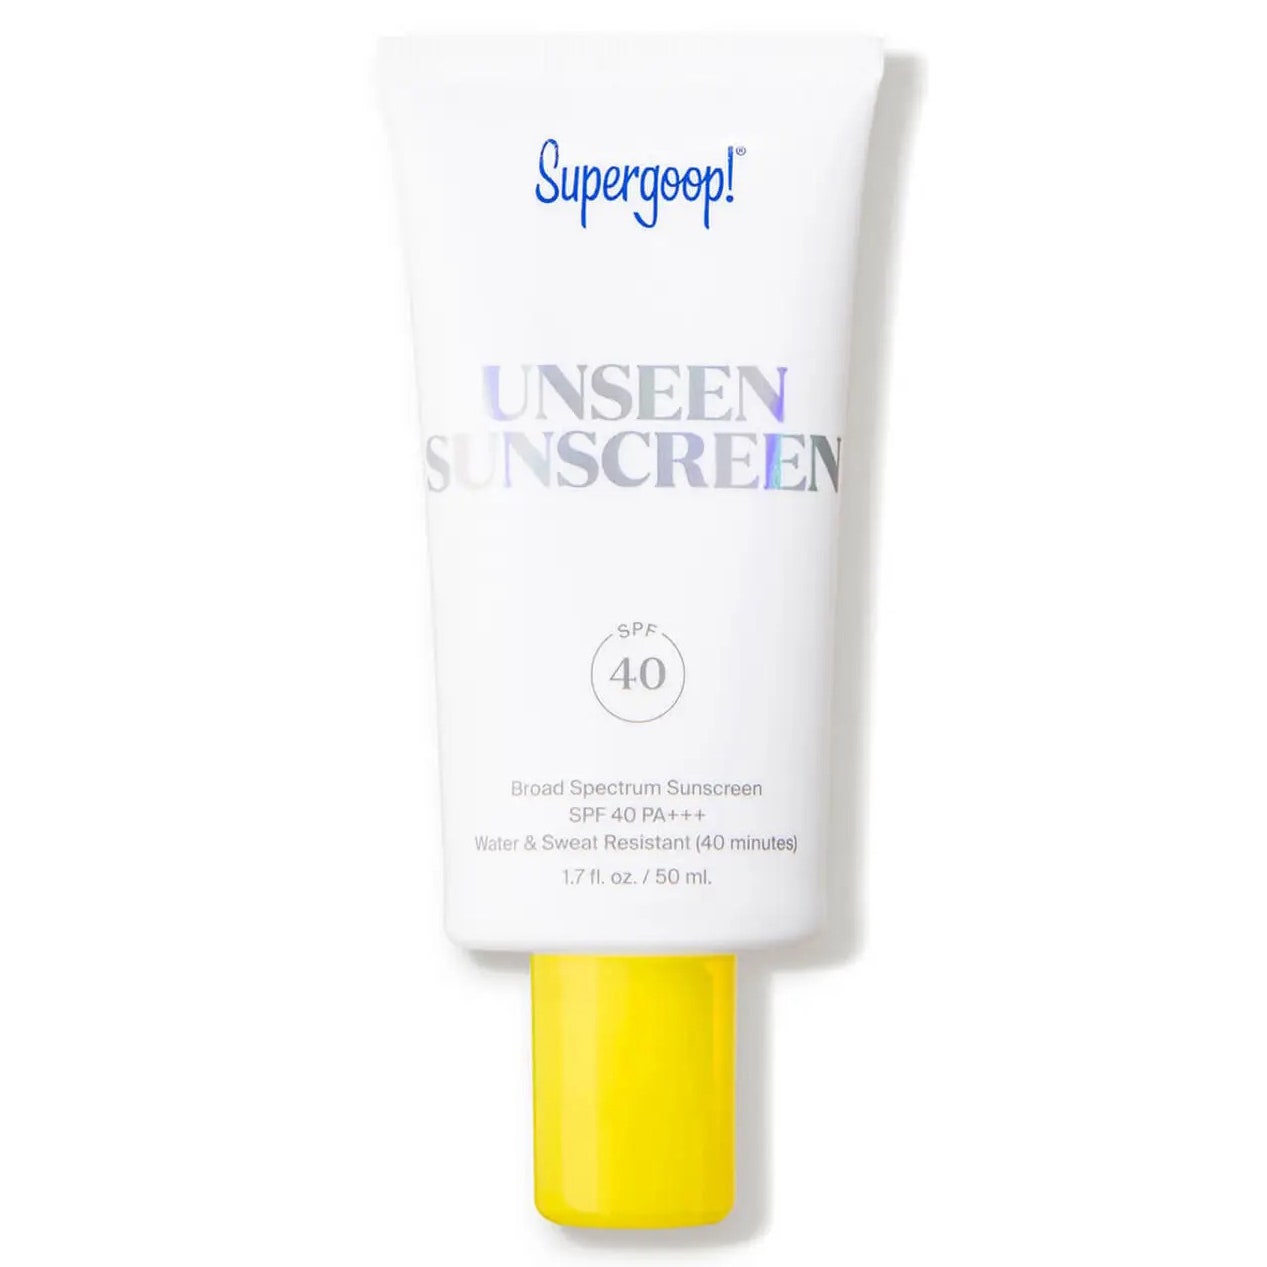 Supergoop Unseen Sunscreen SPF 40 flache weiße Tube mit gelber Kappe auf weißem Hintergrund